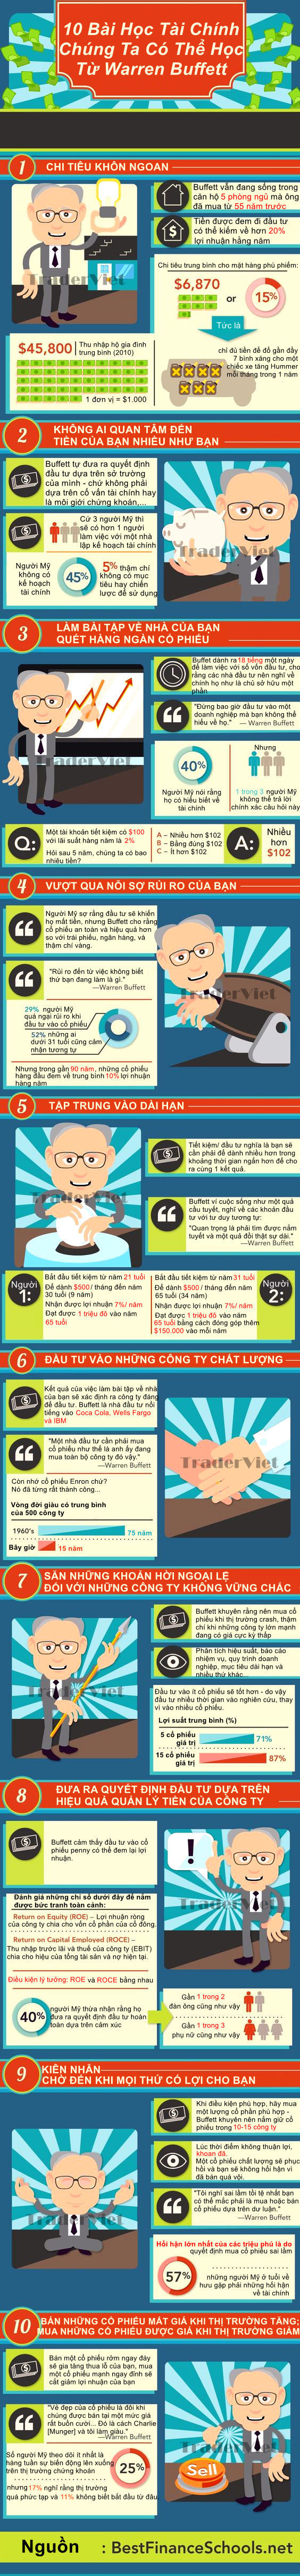 Infographic-10-Bai-hoc-tai-chinh-sieu-chat-tu-nha-dau-tu-ty-phu-Warren-Buffett-TraderViet1.jpg